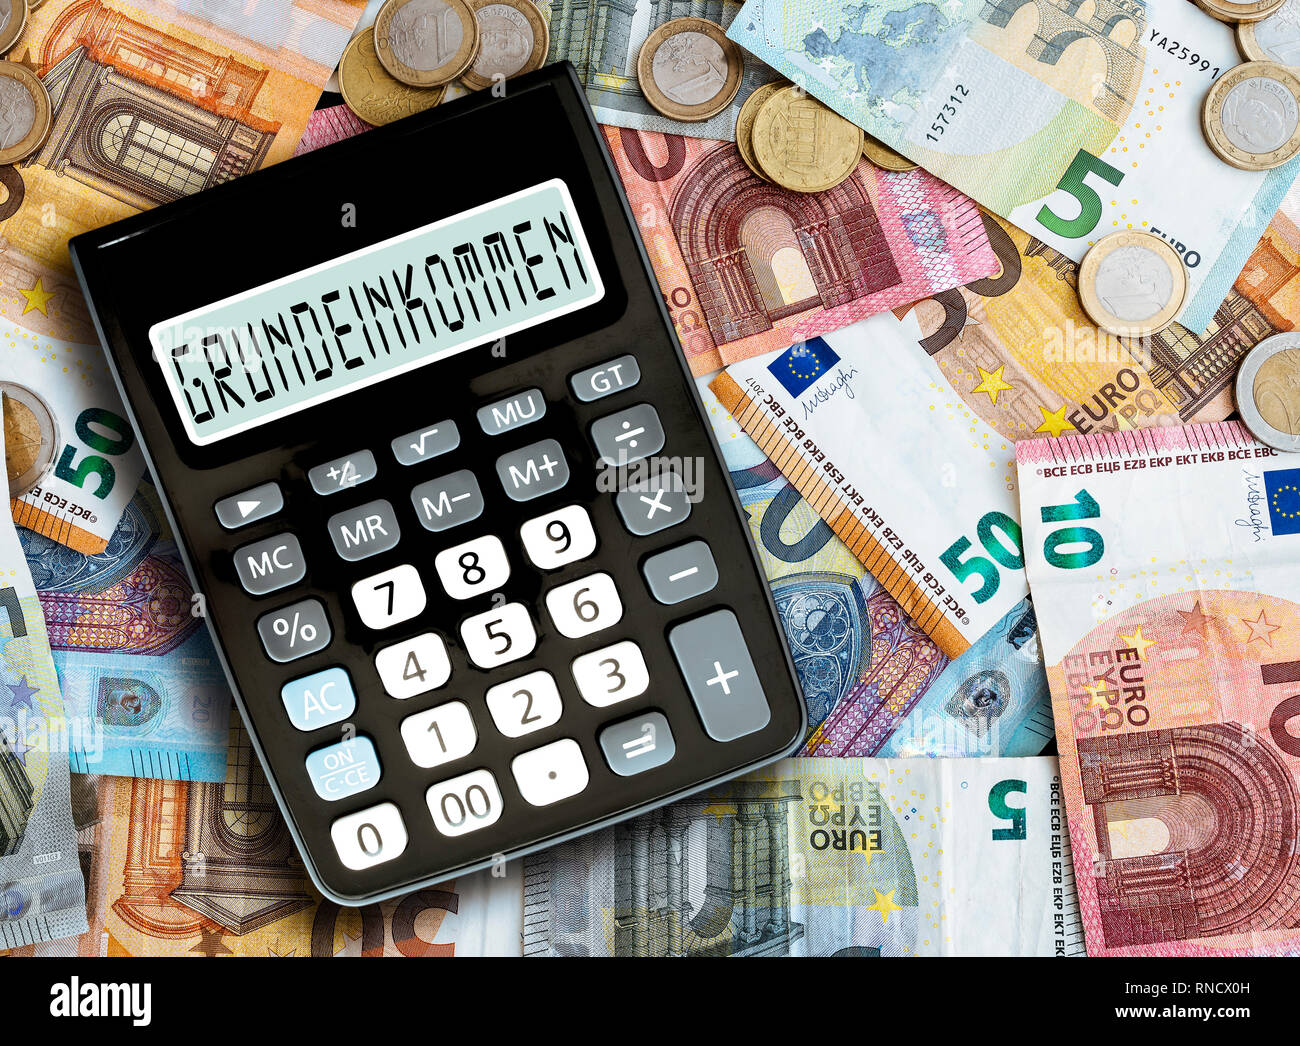 Parola tedesca GRUNDEINKOMMEN (reddito base) scritto sul display della calcolatrice tascabile contro il denaro sul tavolo Foto Stock